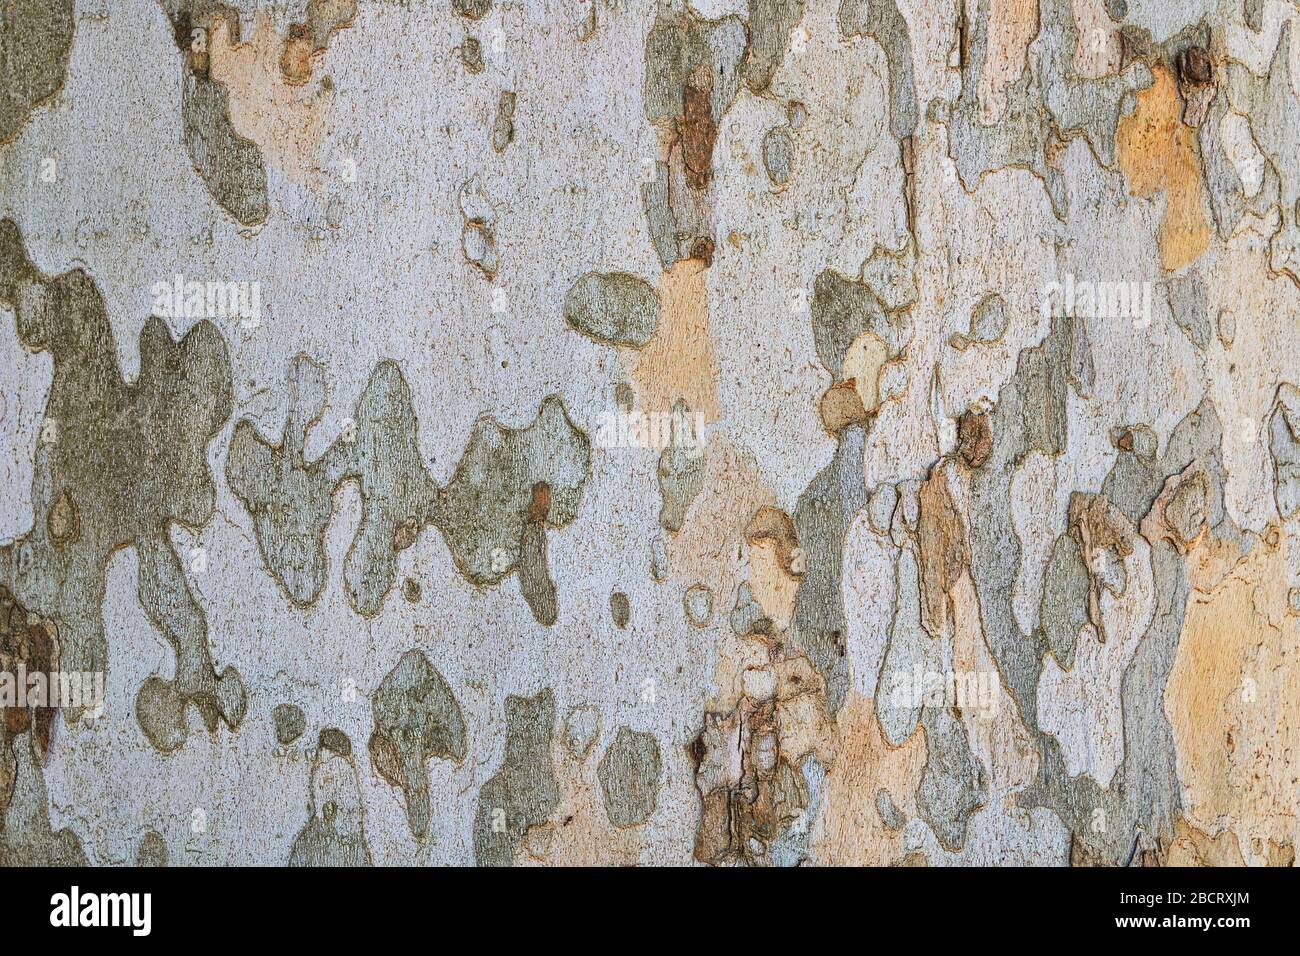 La tessitura della corteccia londinese ( Platanus × acerifolia ), un ibrido tra il piano orientale e il sicomoro americano Foto Stock